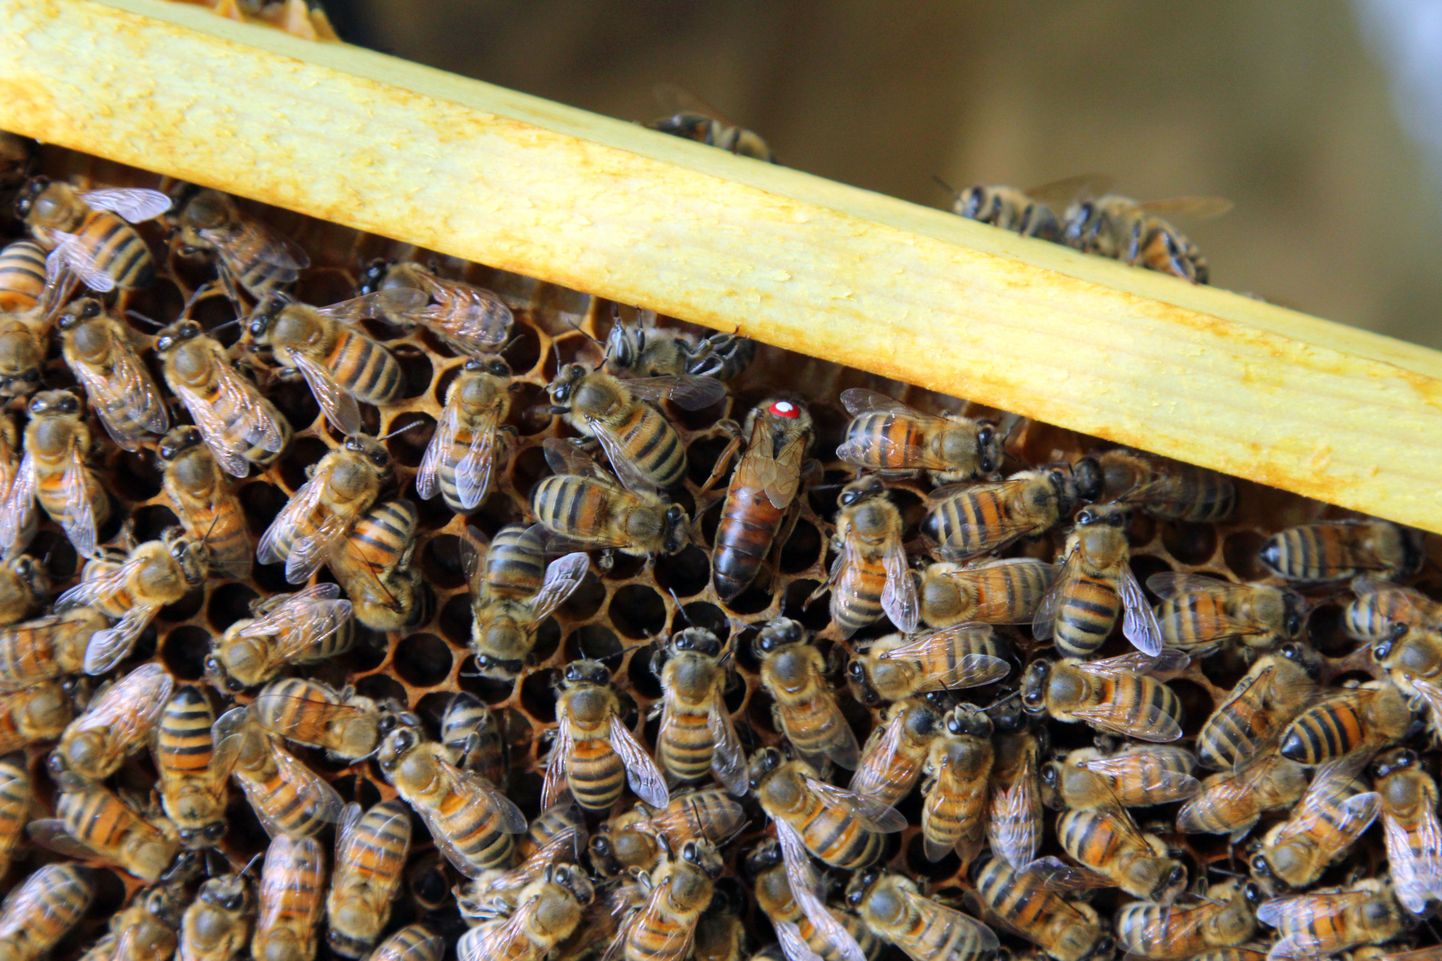 Tänu mesilastele on miljonite aastate jooksul välja aretatud just selliste taimede, puuviljade, köögiviljade õite tolmlemine, mille vilju tarvitades kujunes inimese organism.